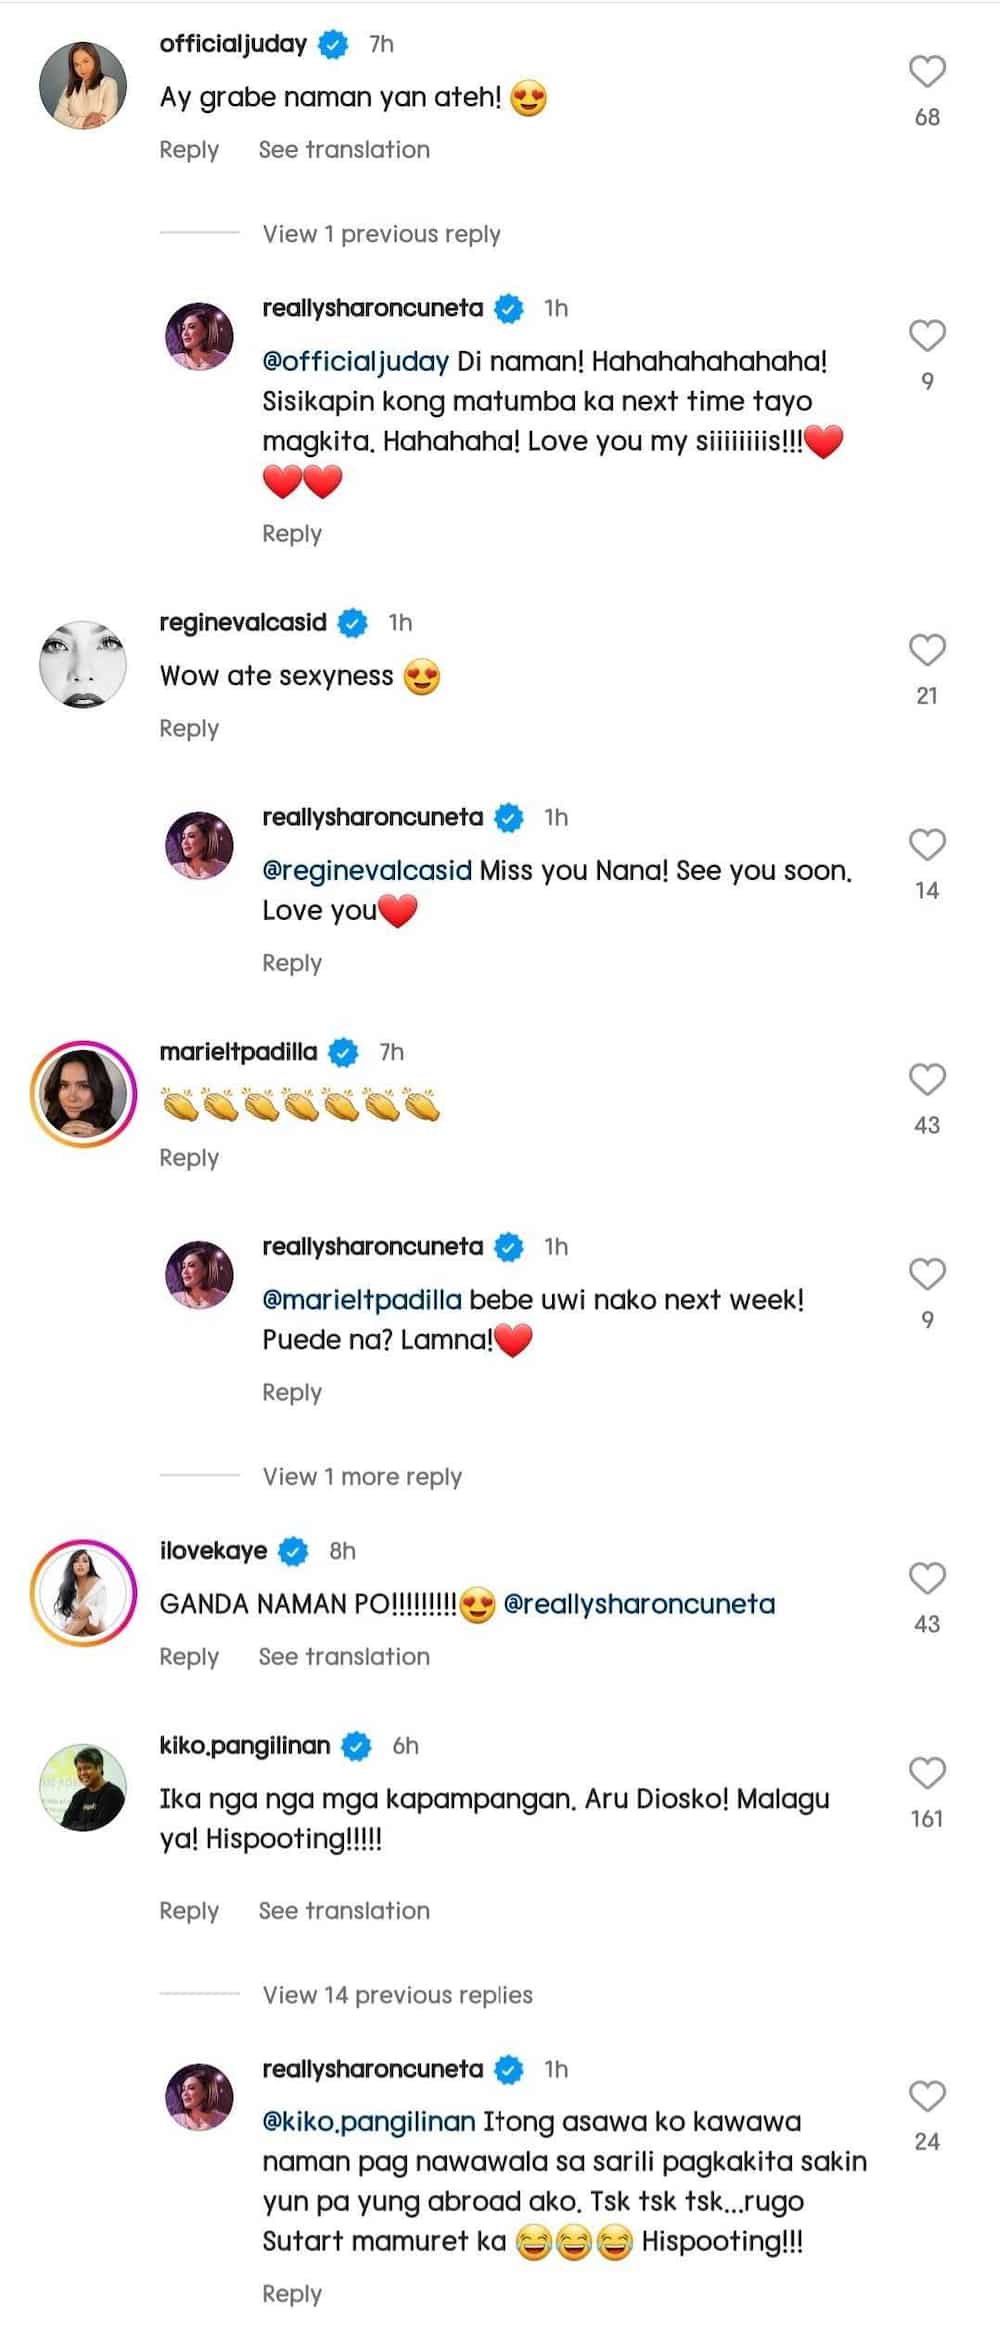 Celebrities, netizens gush over Sharon Cuneta's new OOTD photos on social media